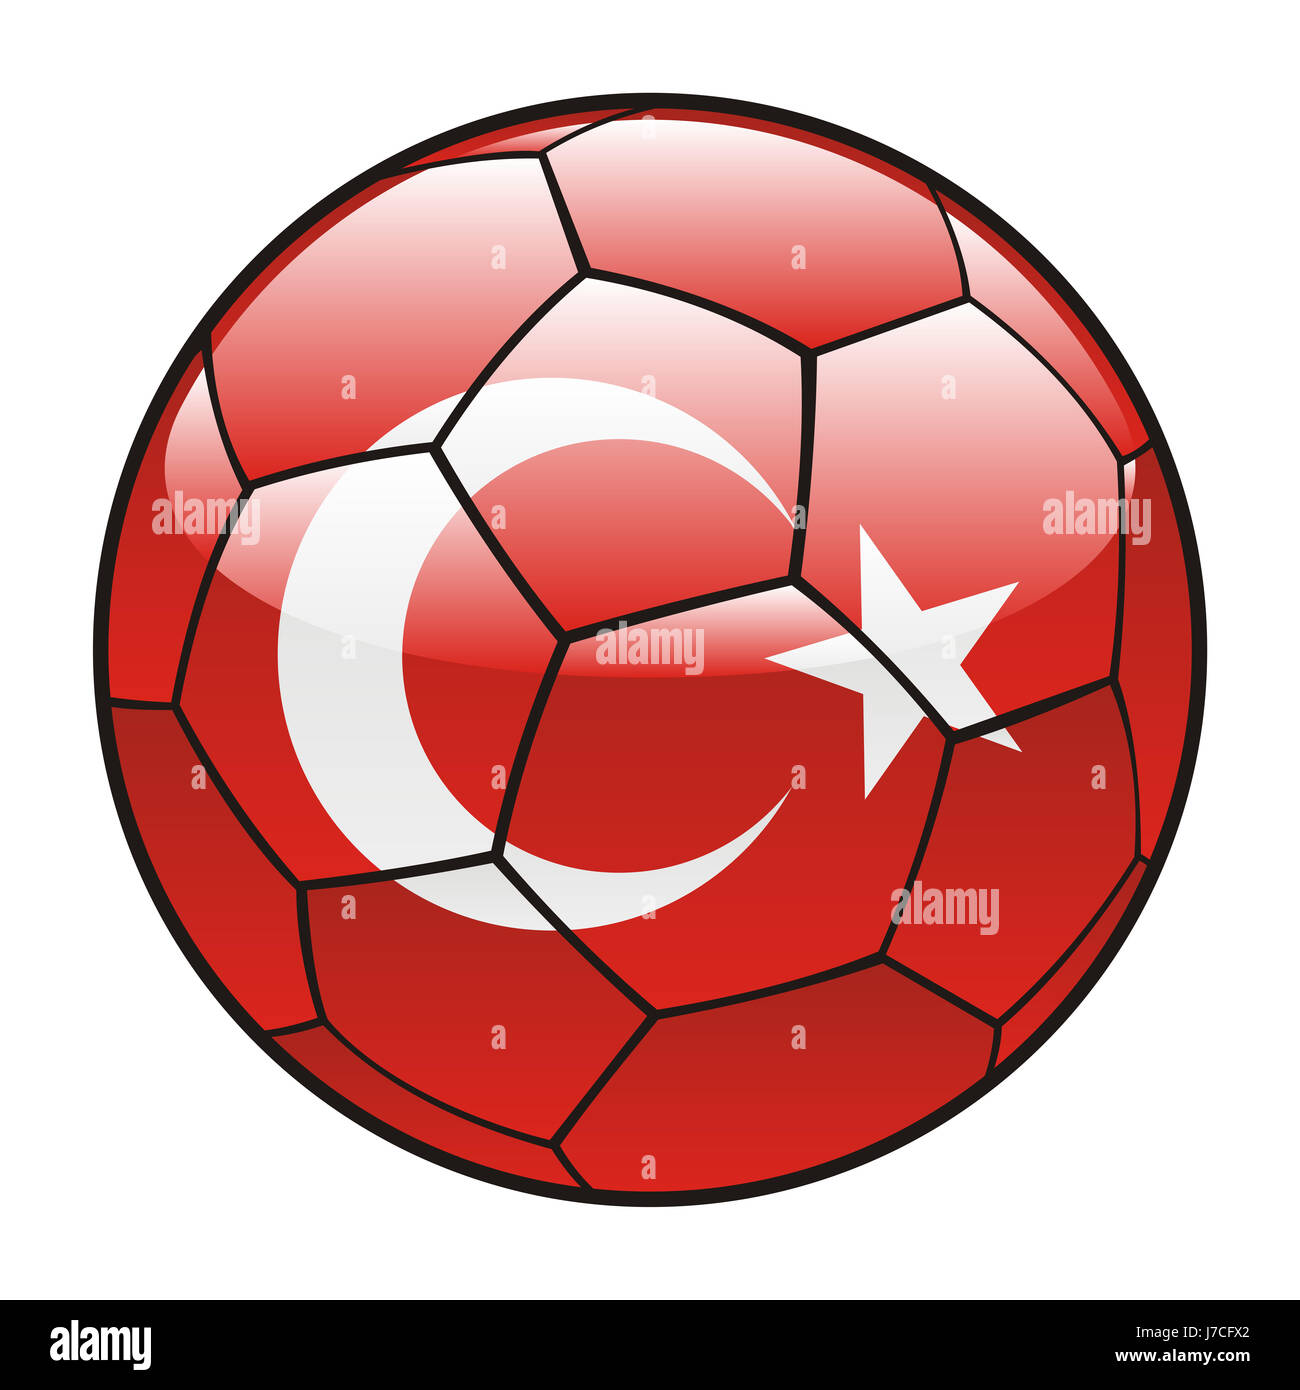 Illustration isolé la Turquie drapeau football soccer sport sports icon sport Banque D'Images